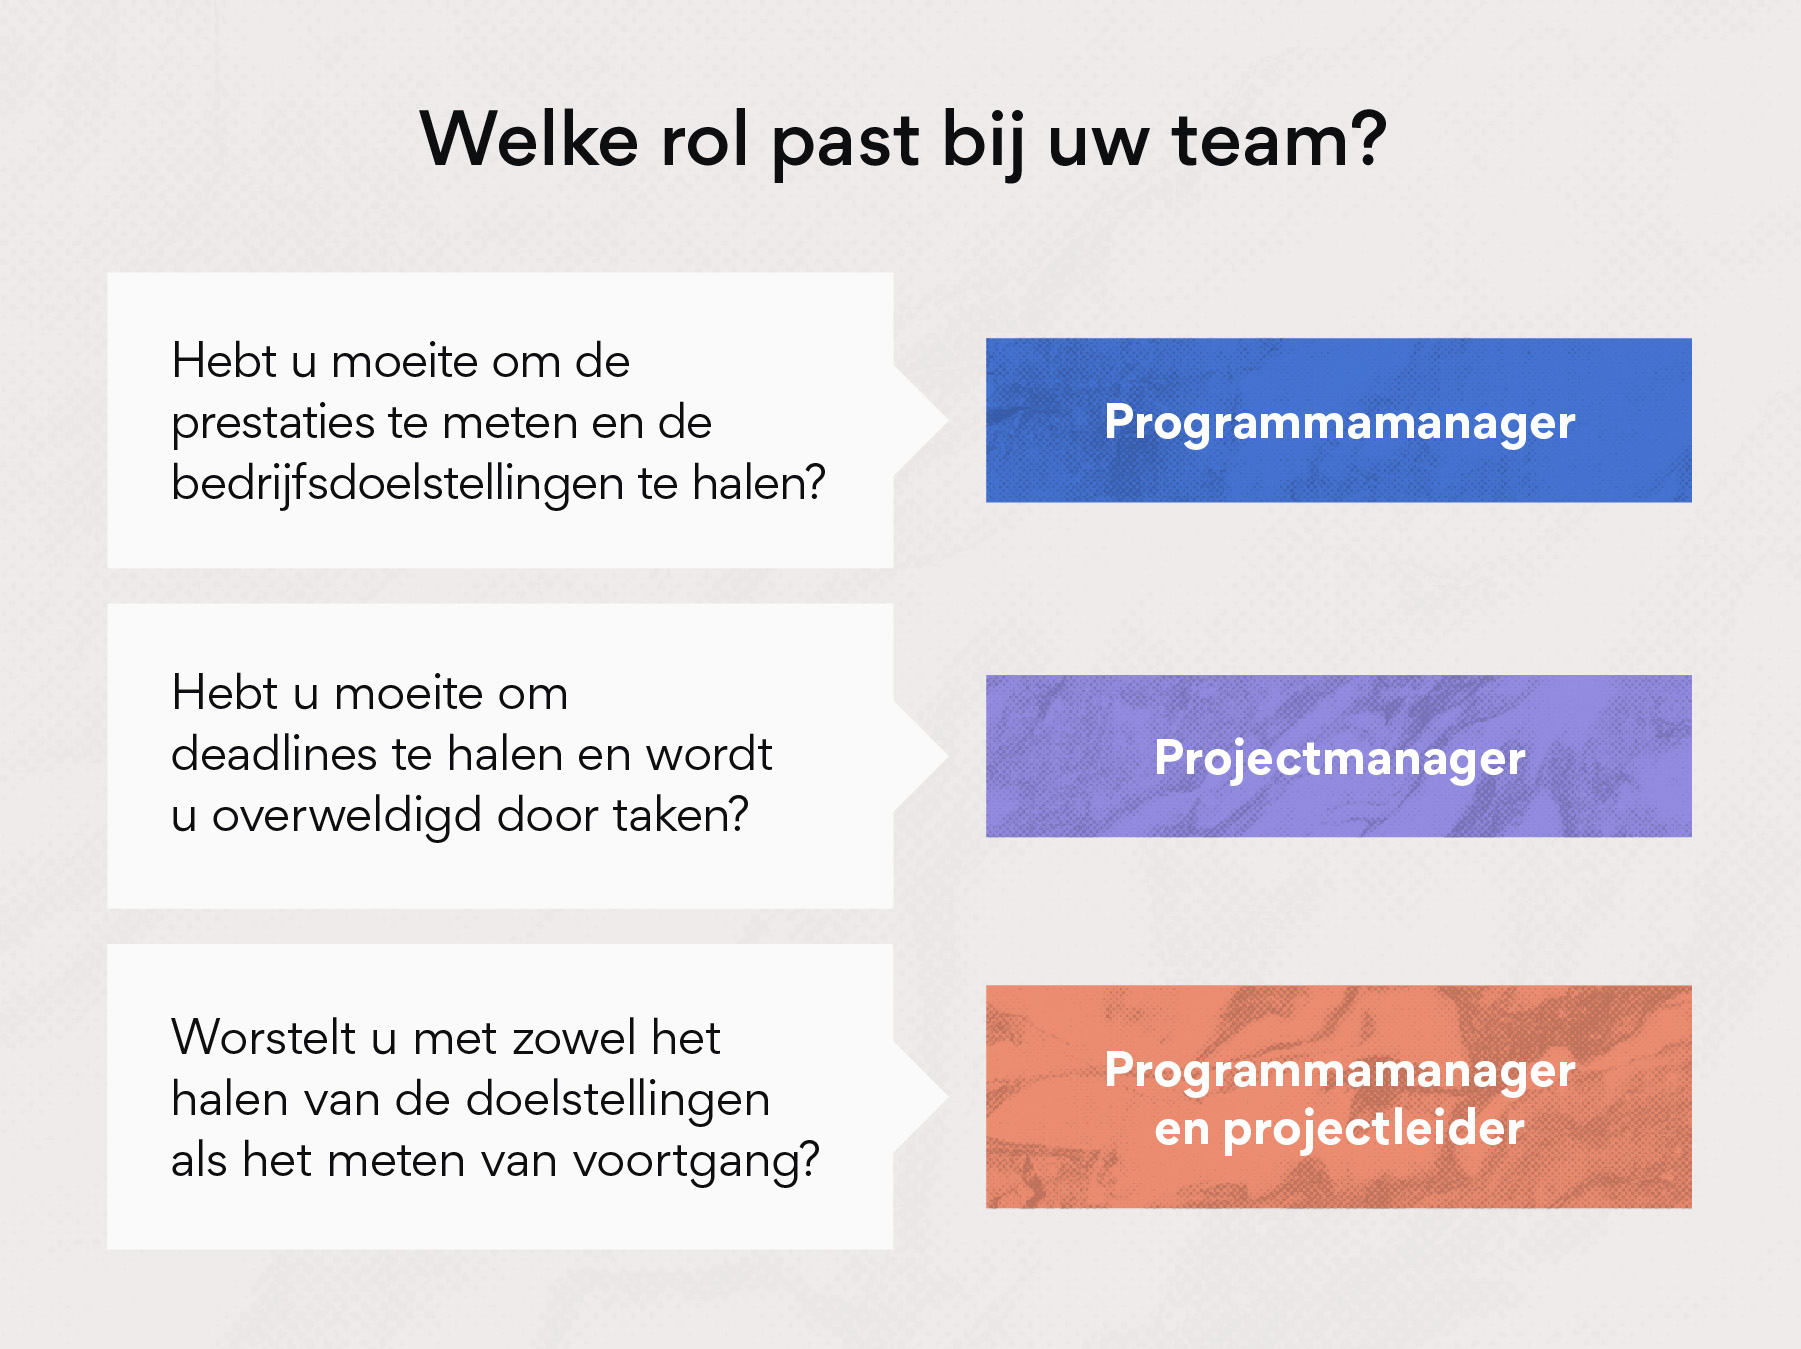 Welke rol is geschikt voor uw team: programmabeheerder of projectbeheerder?